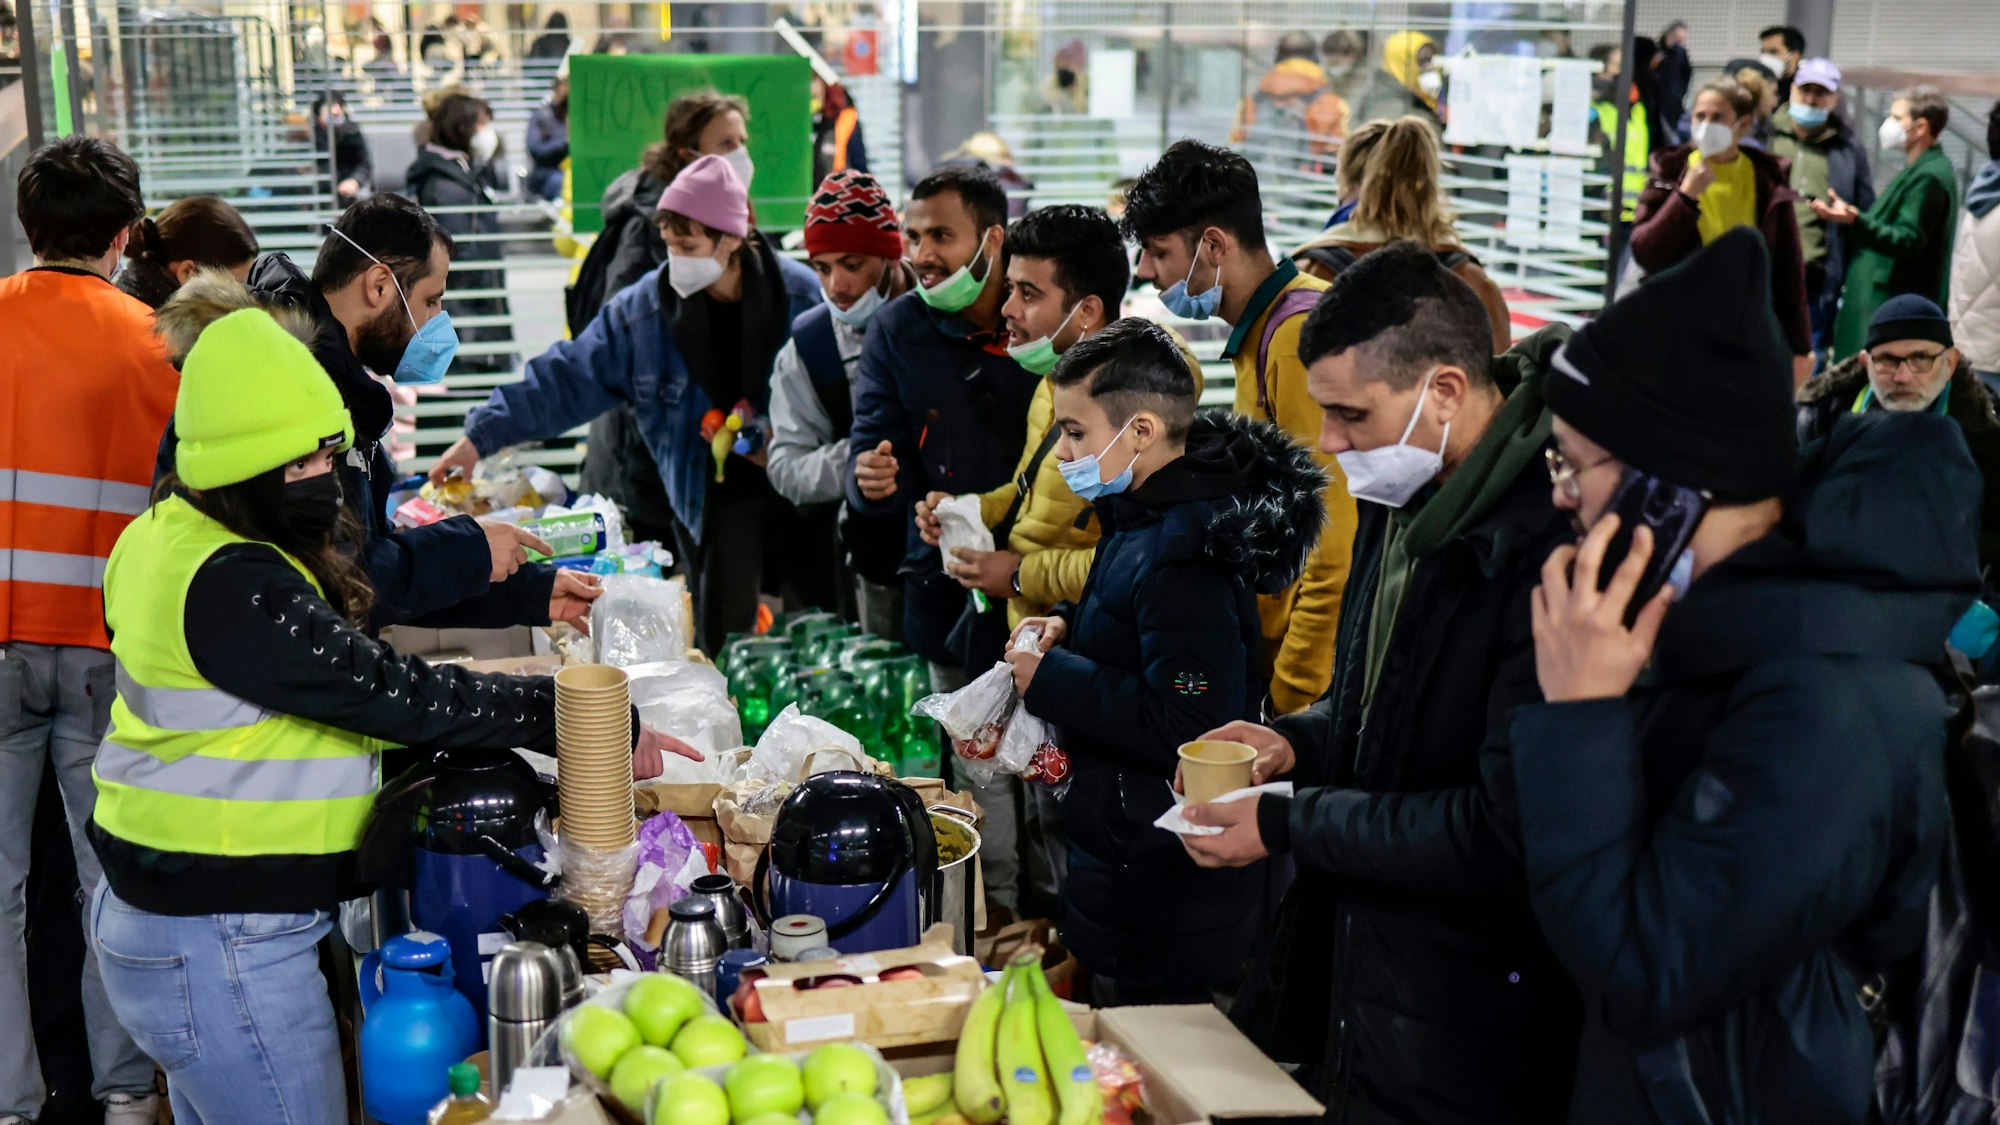 Freiwillige verteilen Getränke und Essen an Flüchtlinge aus der Ukraine, die am 1. März am Hauptbahnhof in Berlin ankommen. Tausende Menschen suchen auch in Deutschland Schutz vor dem Krieg. Die Polizeigewerkschaften befürchten nun, dass es vermehrt zu Anschlägen auf Flüchtlingsheime kommen könnte.